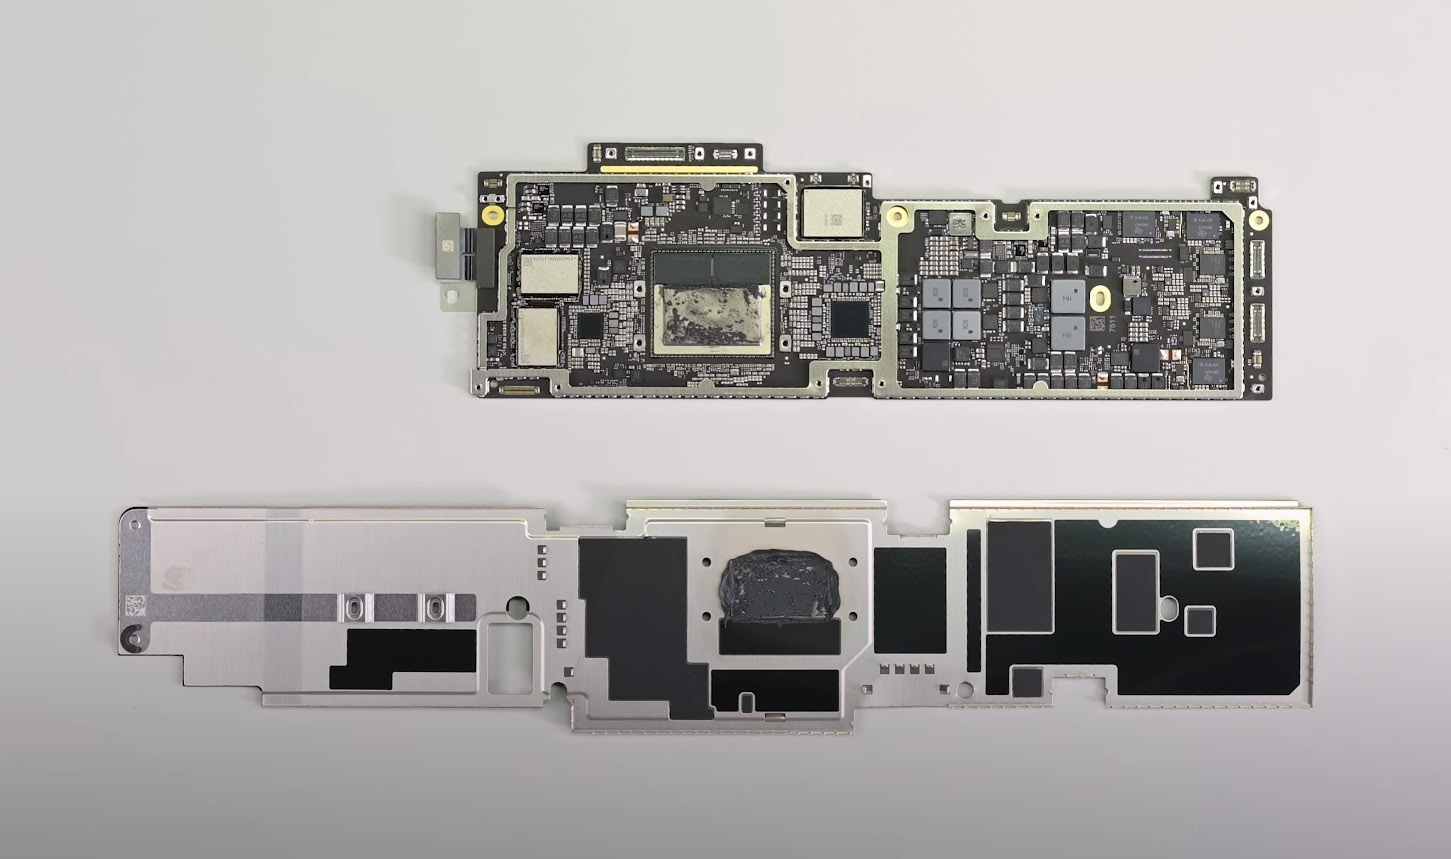 Giám đốc Apple lại nói về 8GB RAM trên MacBook giá khởi điểm: "Ngần ấy là đủ cho tác vụ cơ bản"